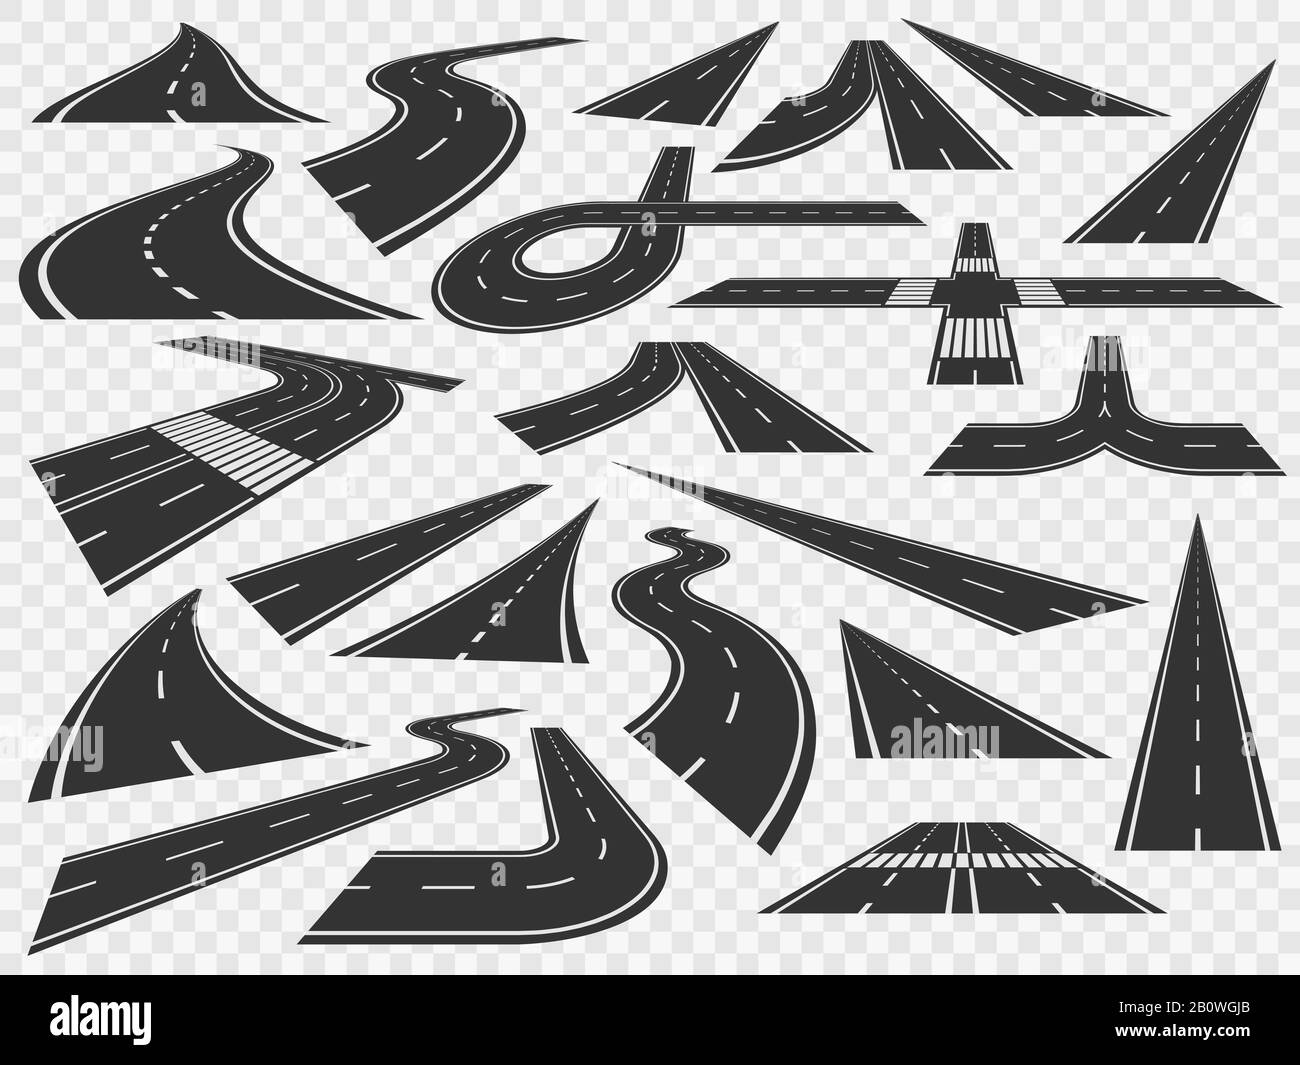 Carretera curva en perspectiva. Curvas de carreteras curvas, asfalto doblado rural y curvas de carreteras de giro conjunto de ilustración vectorial Ilustración del Vector